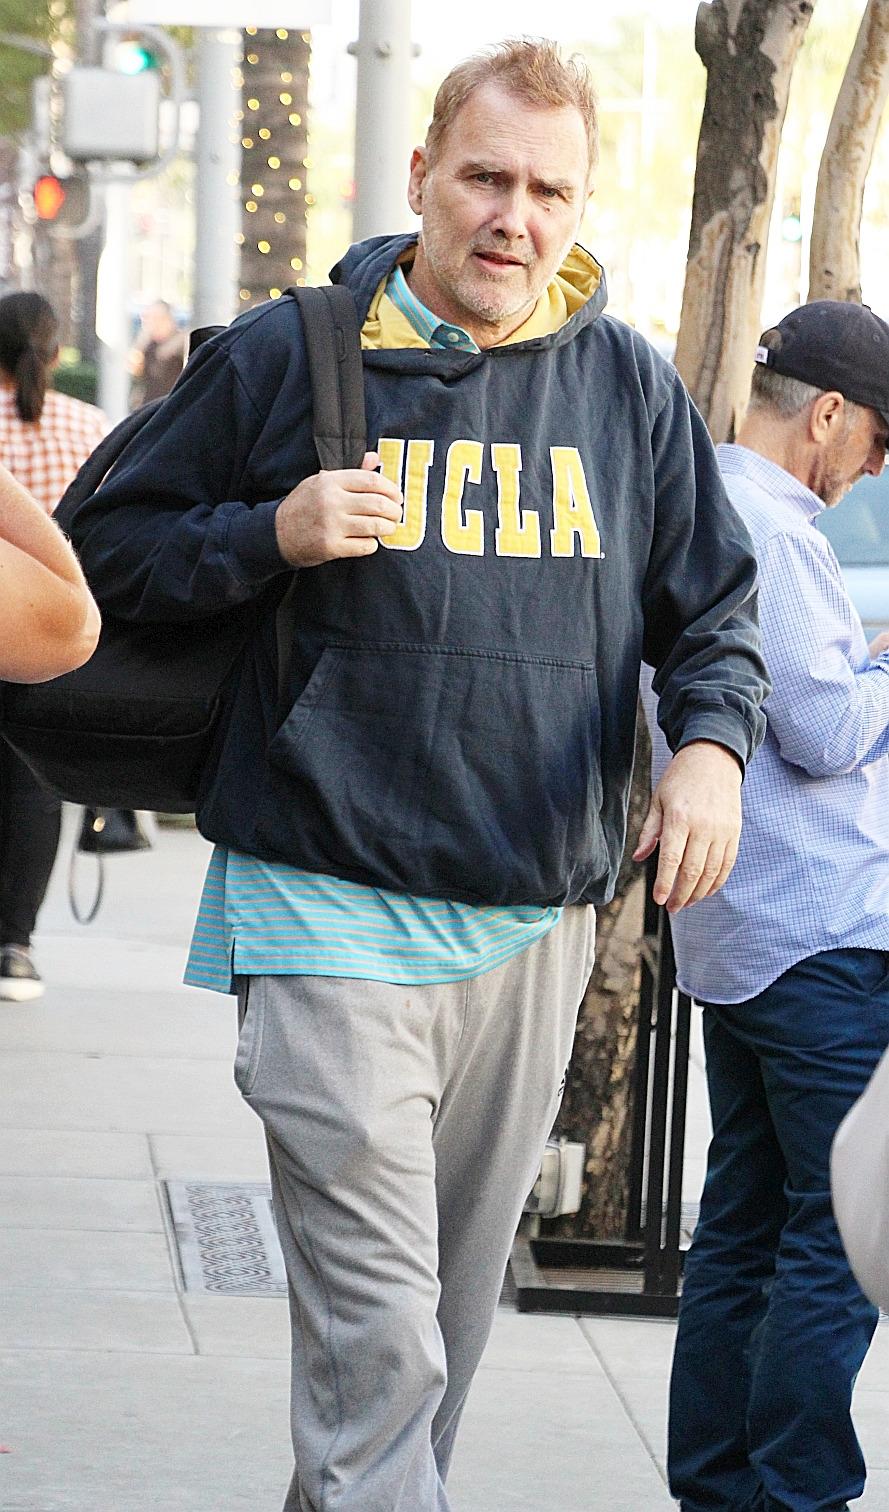 Canadian comedian Norm MacDonald seen wearing UCLA sweat shirt